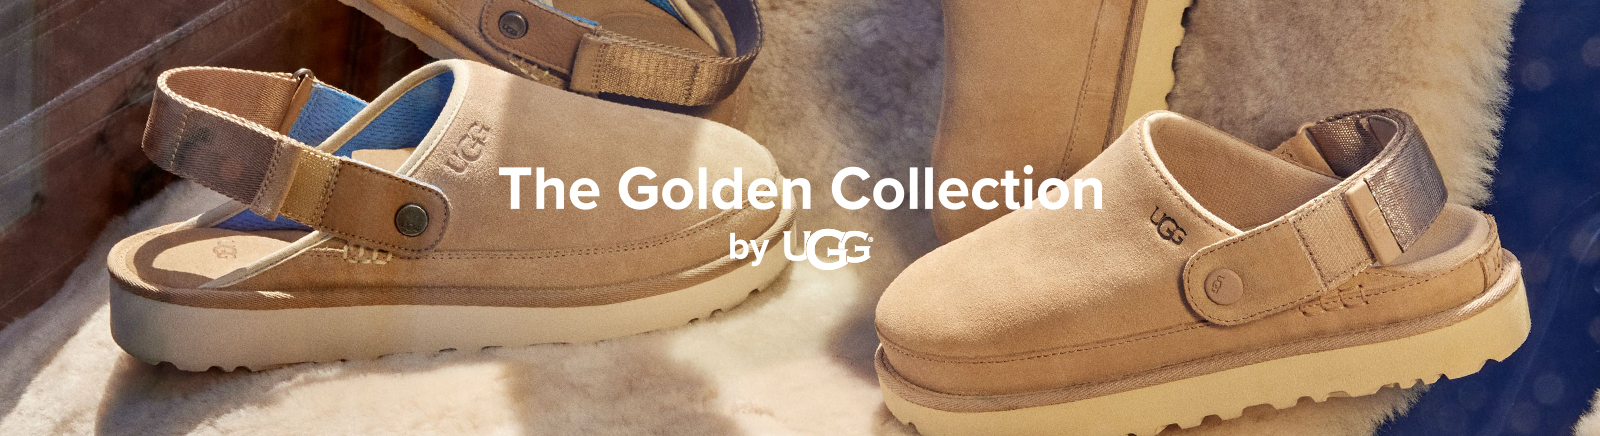 Juppen: UGG Sandalen für Damen kaufen online shoppen